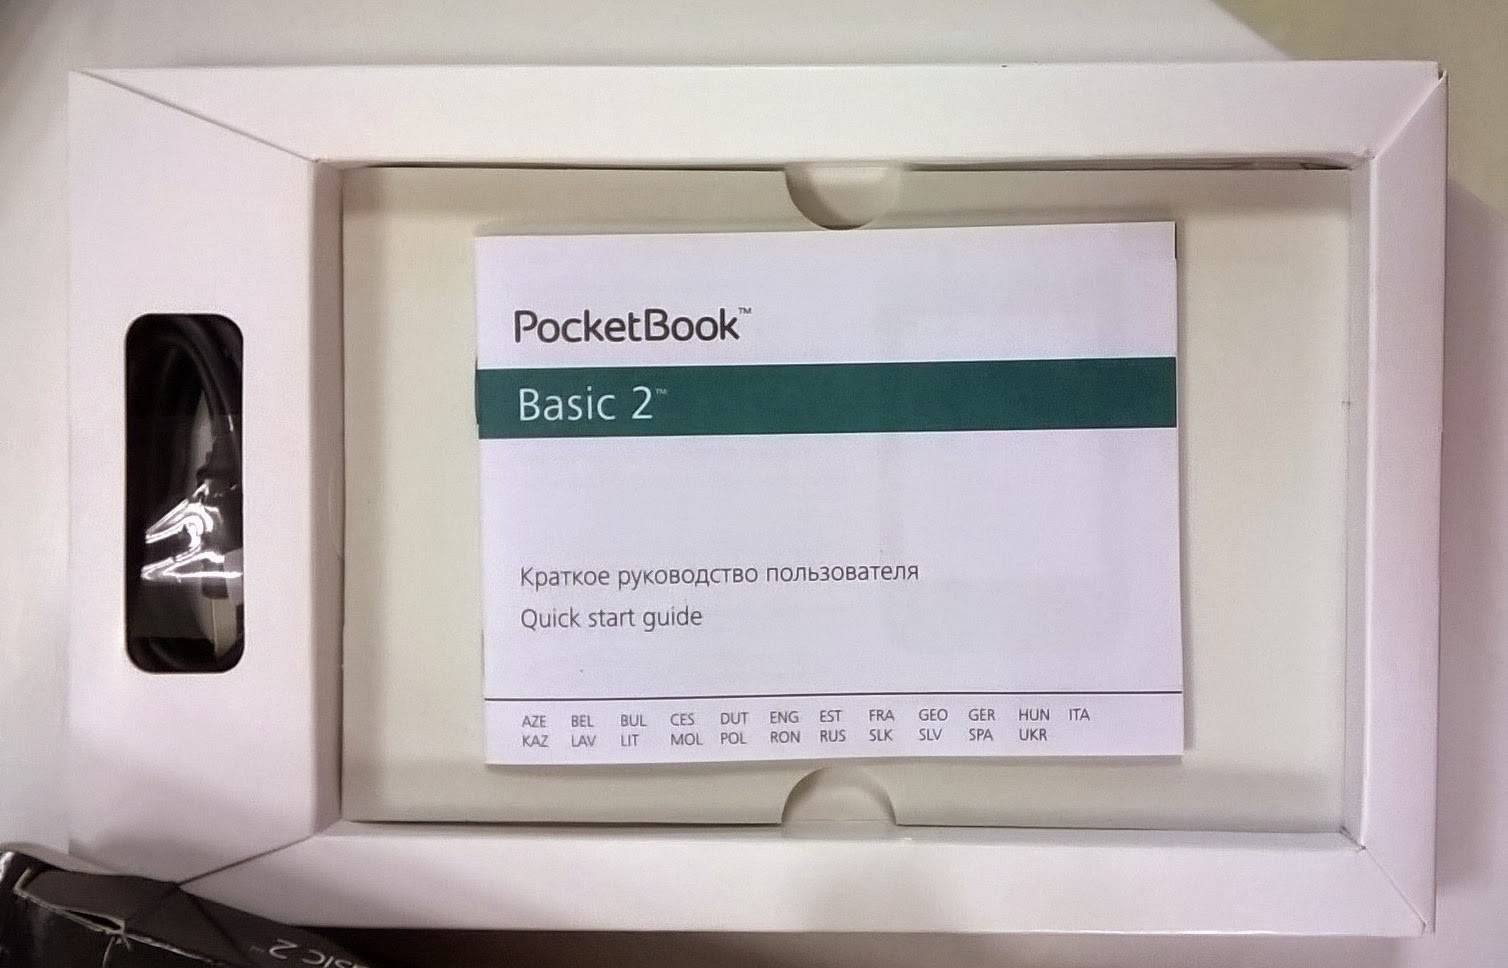 PocketBook Basic 2 krabica